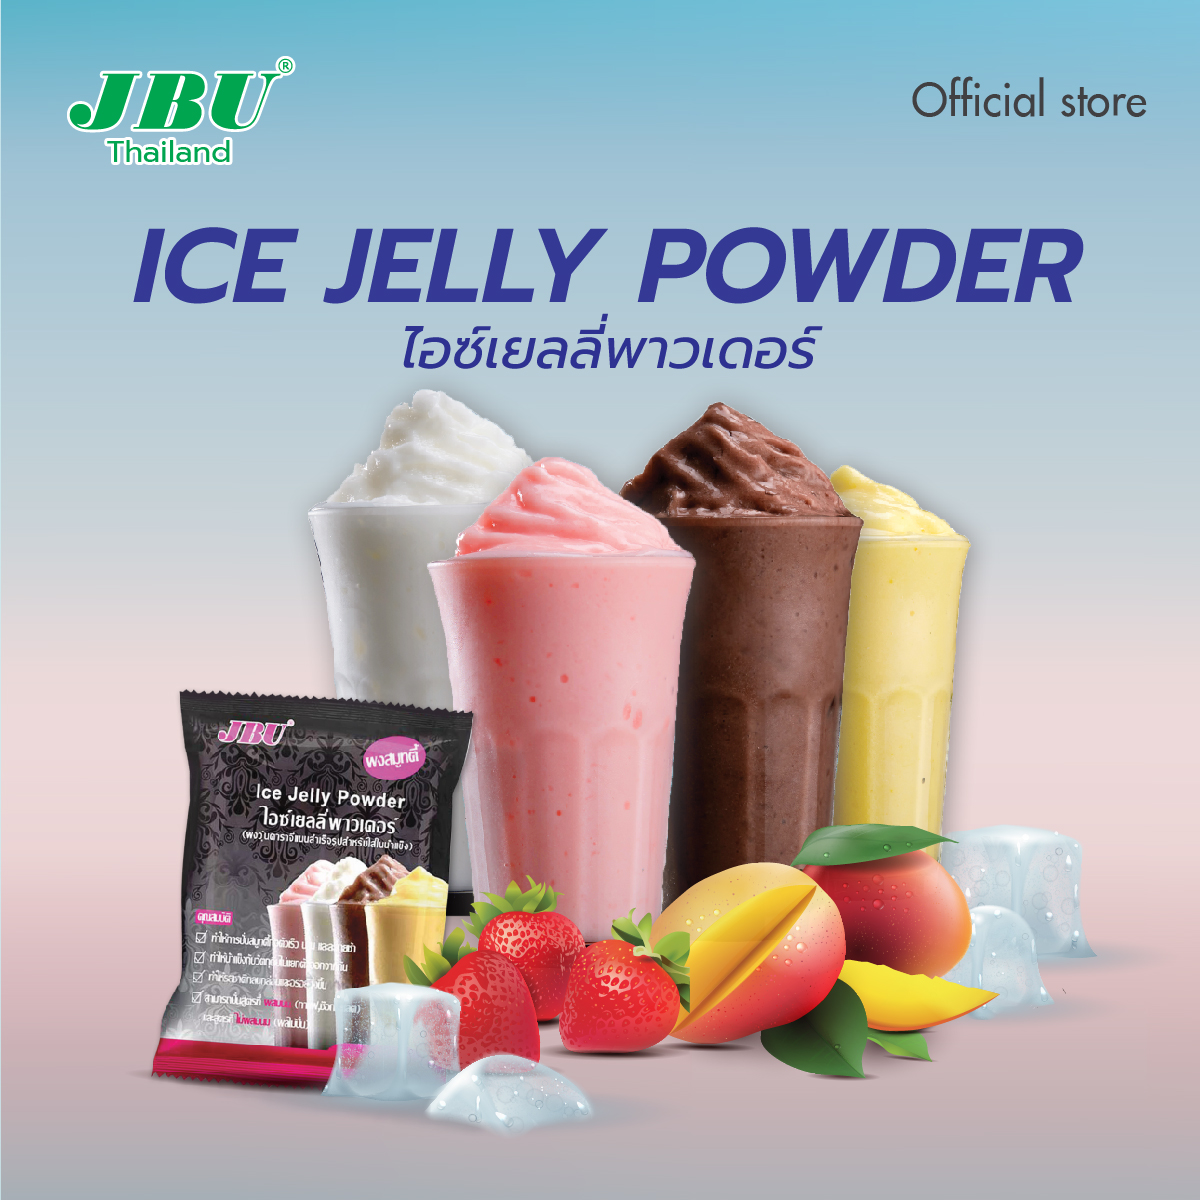 ผงปั่นสมูทตี้ไอซ์เยลลี่  ผงวุ้นคาราจีแนนสำเร็จรูปสำหรับใส่ในน้ำแข็ง  Ice Jelly Powder (JBU) ขนาด 500 กรัม